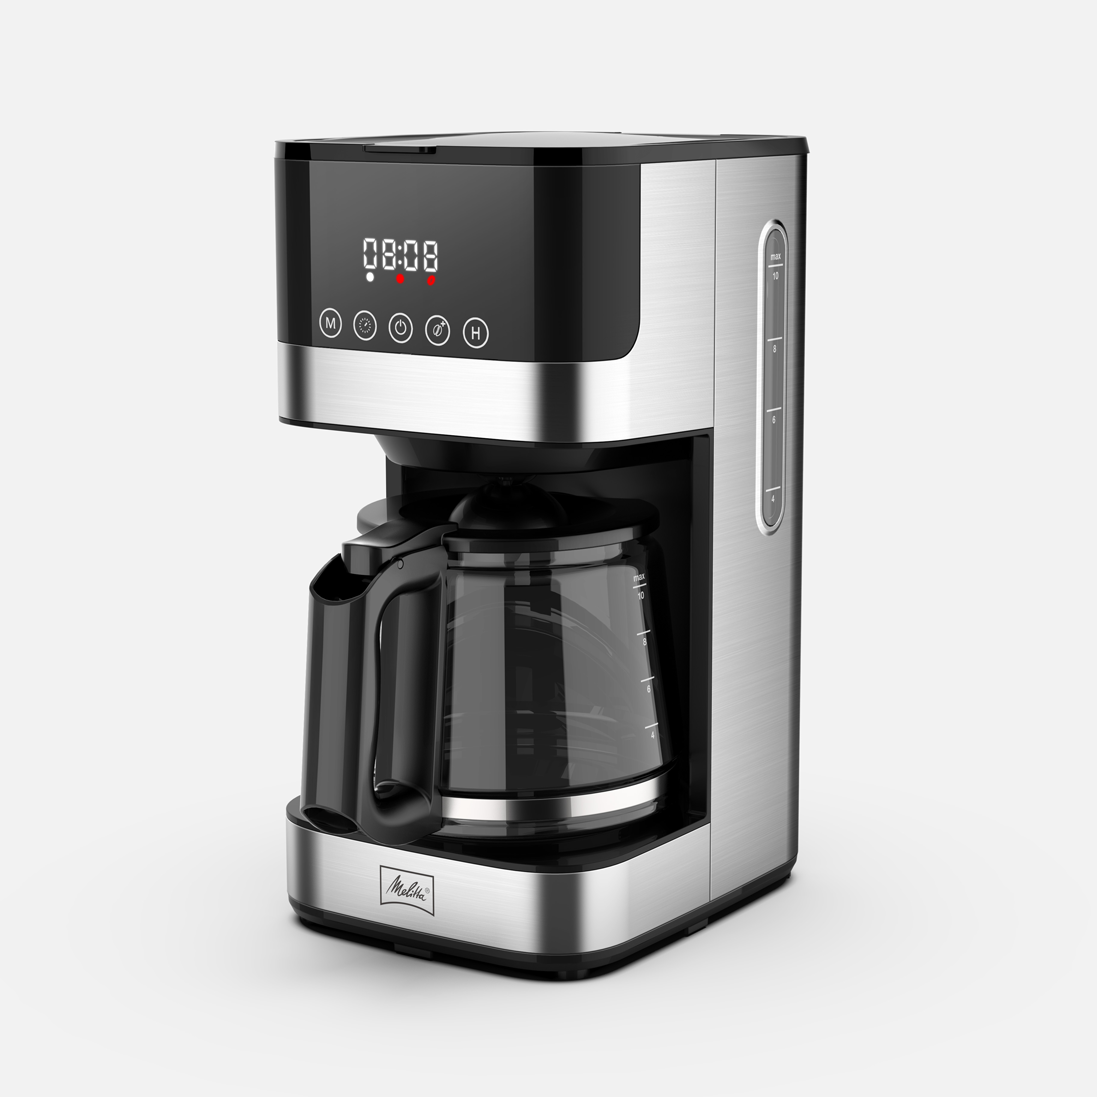 https://www.wabilogic.com/cdn/shop/products/https_www.wabilogic.com_collections_automatic-drip-coffee-makers_2000x.png?v=1700540821